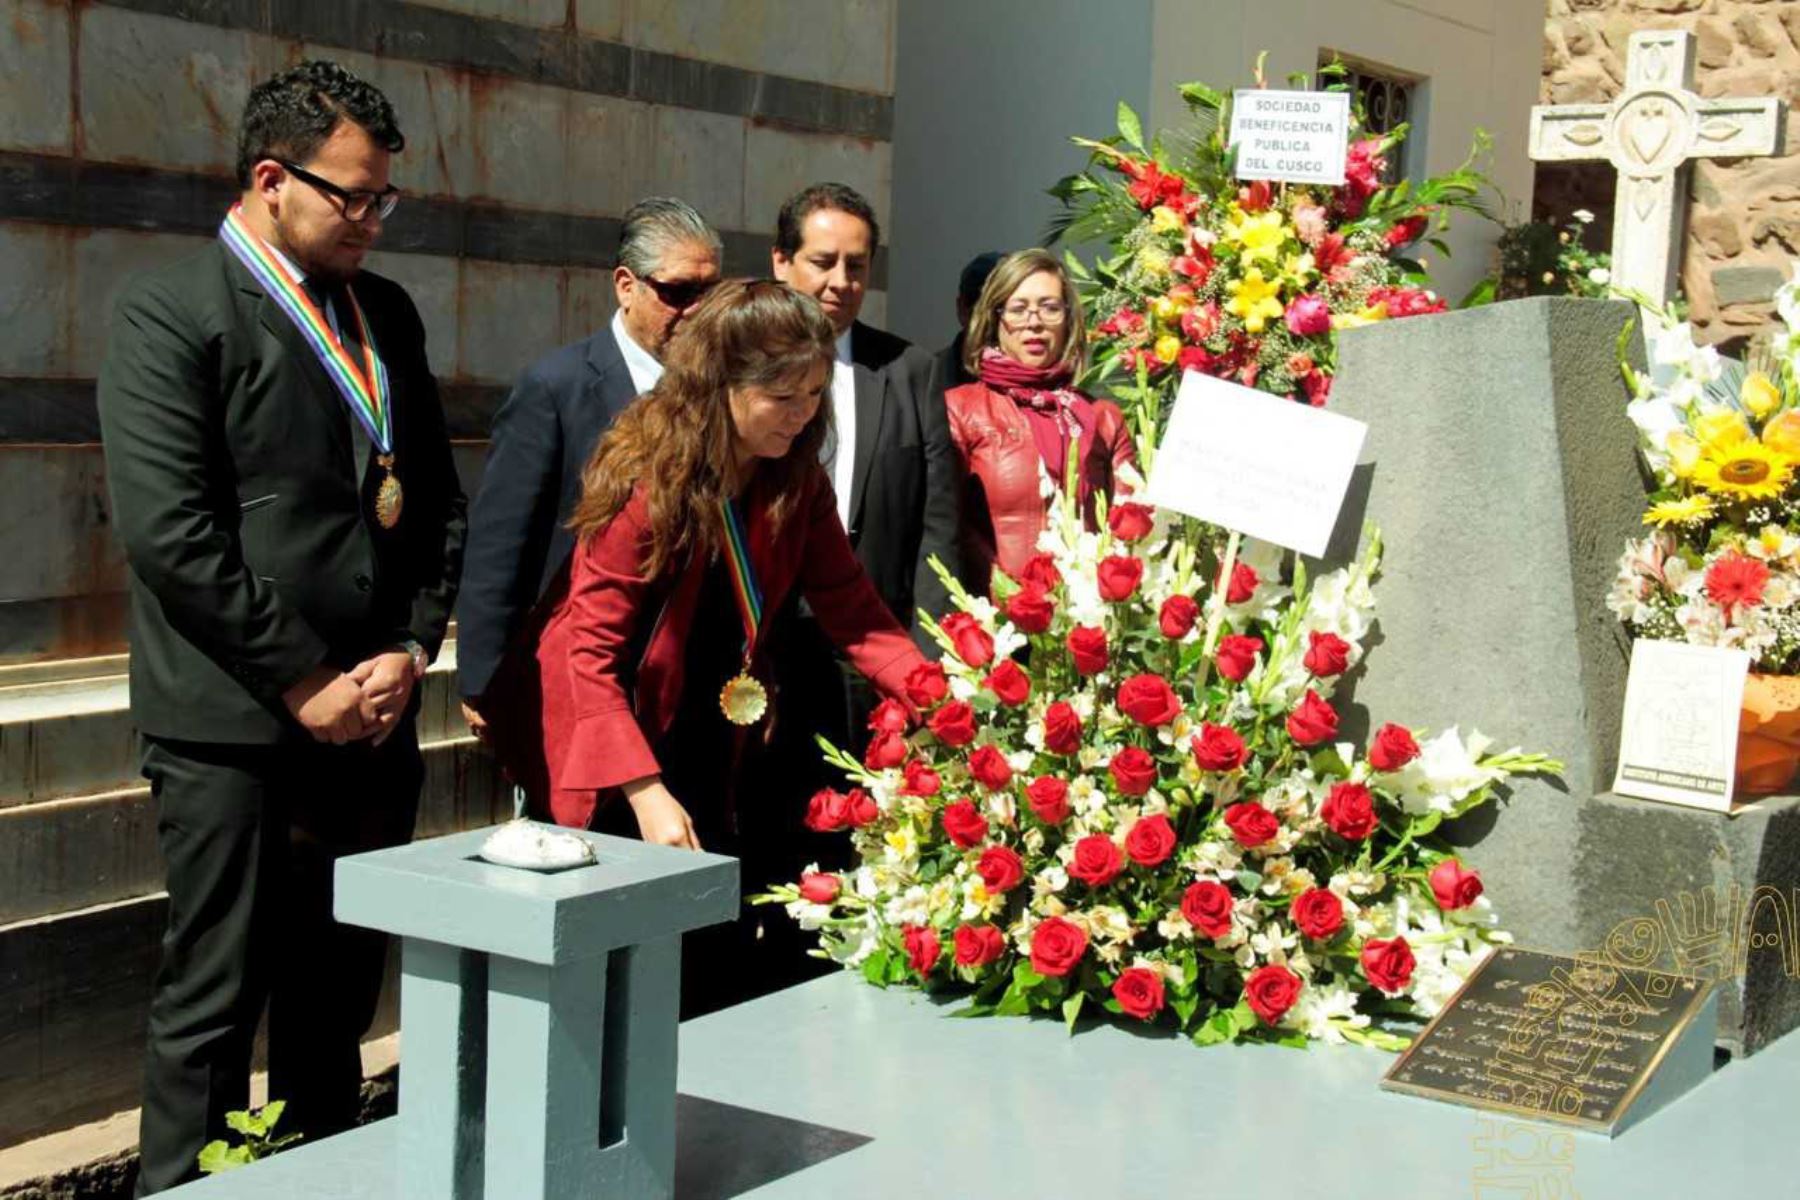 Autoridades de la municipalidad del Cusco y la Empresa Municipal de Festejos del Cusco (Emufec) rindieron homenaje póstumo a Humberto Vidal Unda, Faustino Espinoza Navarro y otros creadores de la celebración del Inti Raymi, en la plaza La Almudena del distrito cusqueño de Santiago.